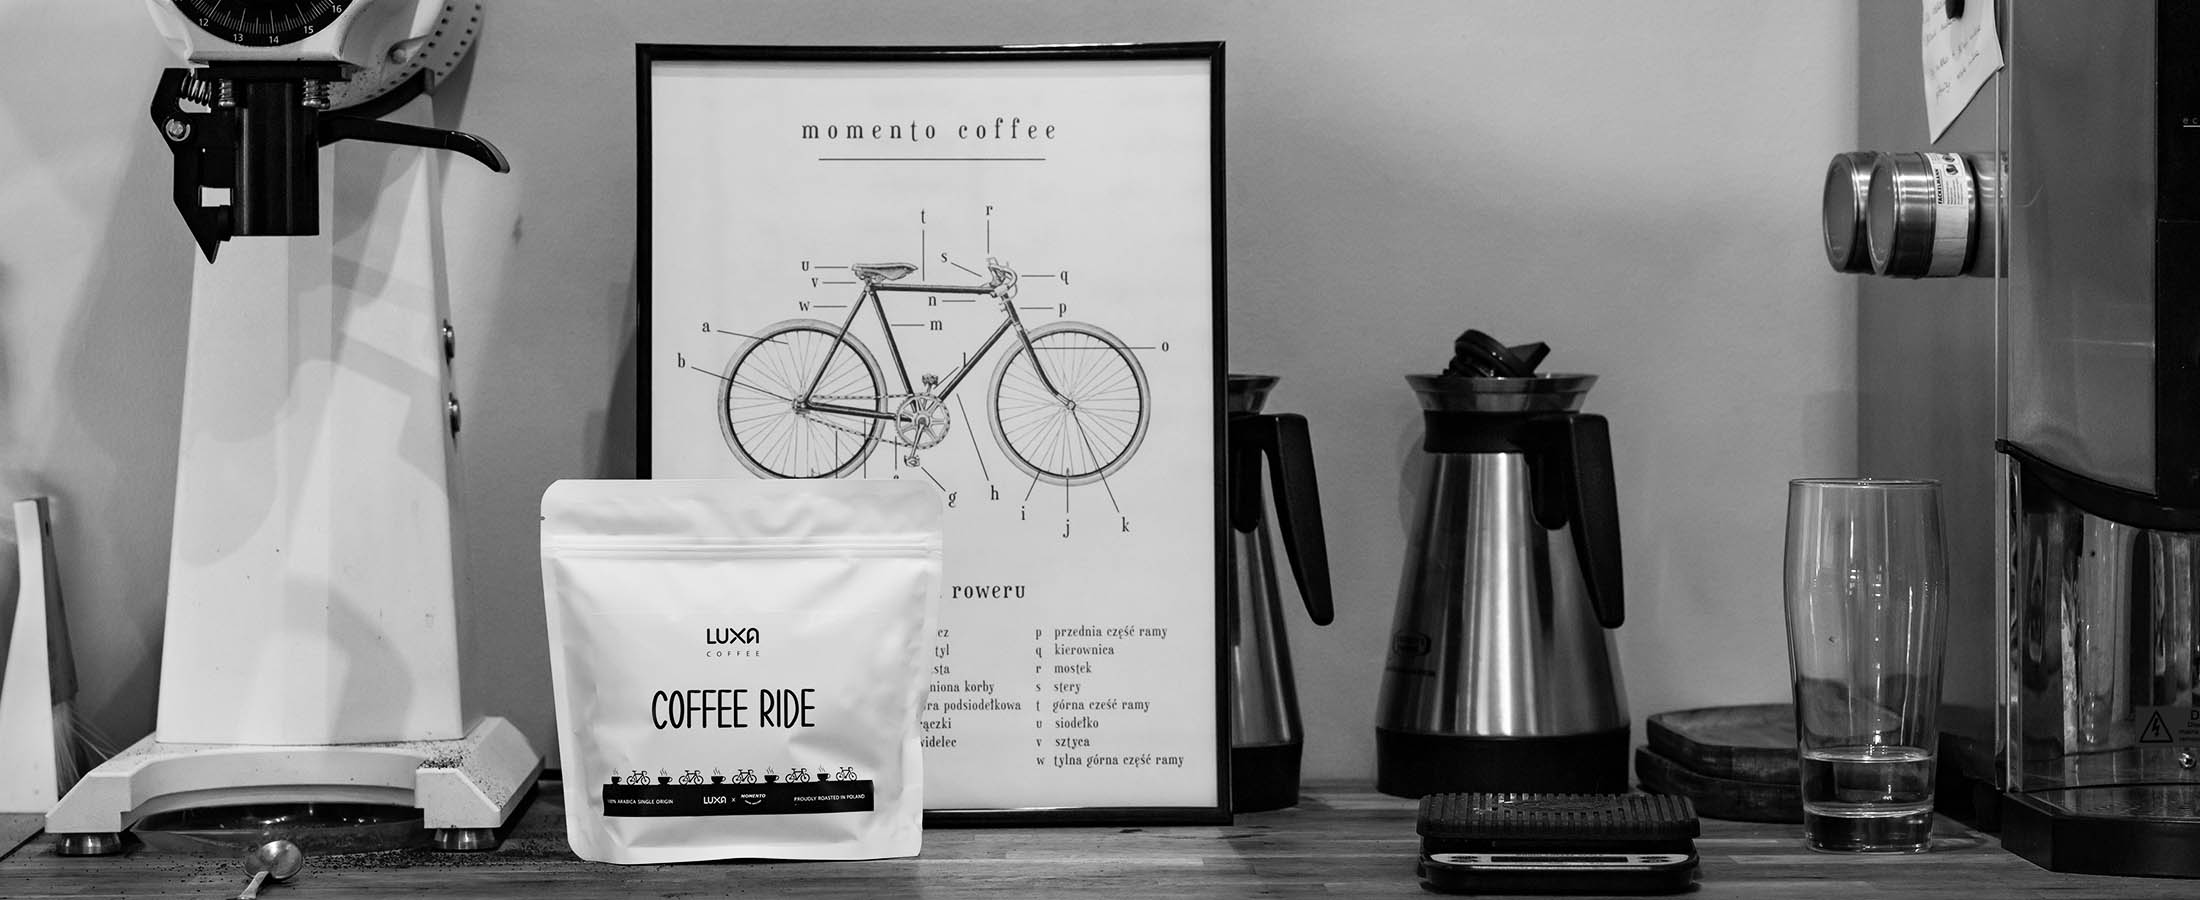 wnętrze kawiarni z klimatycznym obrazkiem z rowerem i kawą dla kolarzy Luxa Coffee Ride z palarni rzeszowskiej Momento